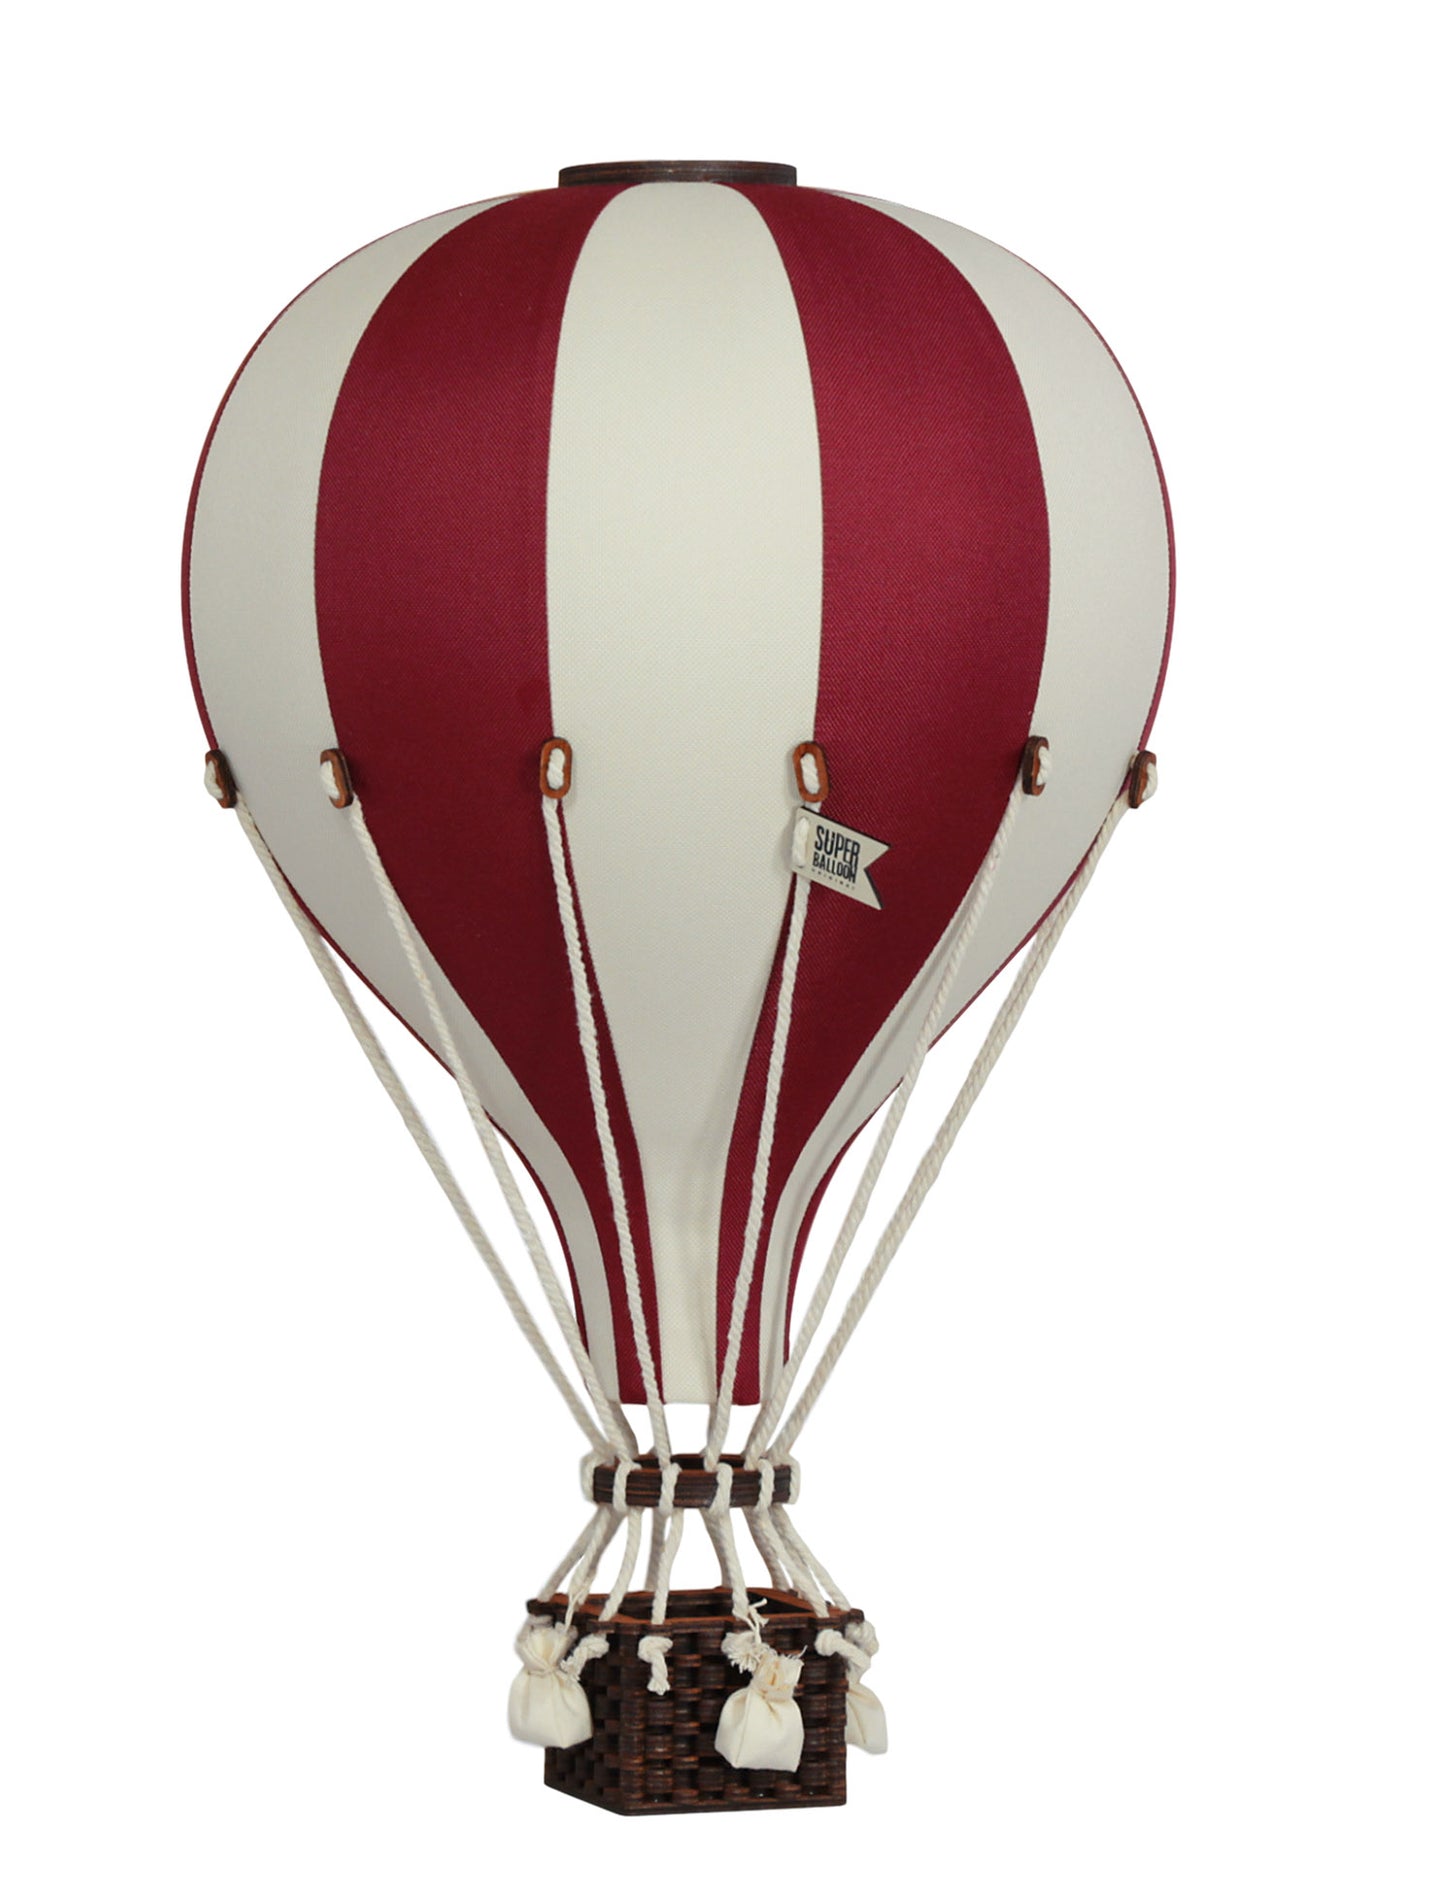 Deko-Heißluftballon L 'Beige/Burgundy' - The Little One • Family.Concept.Store. 